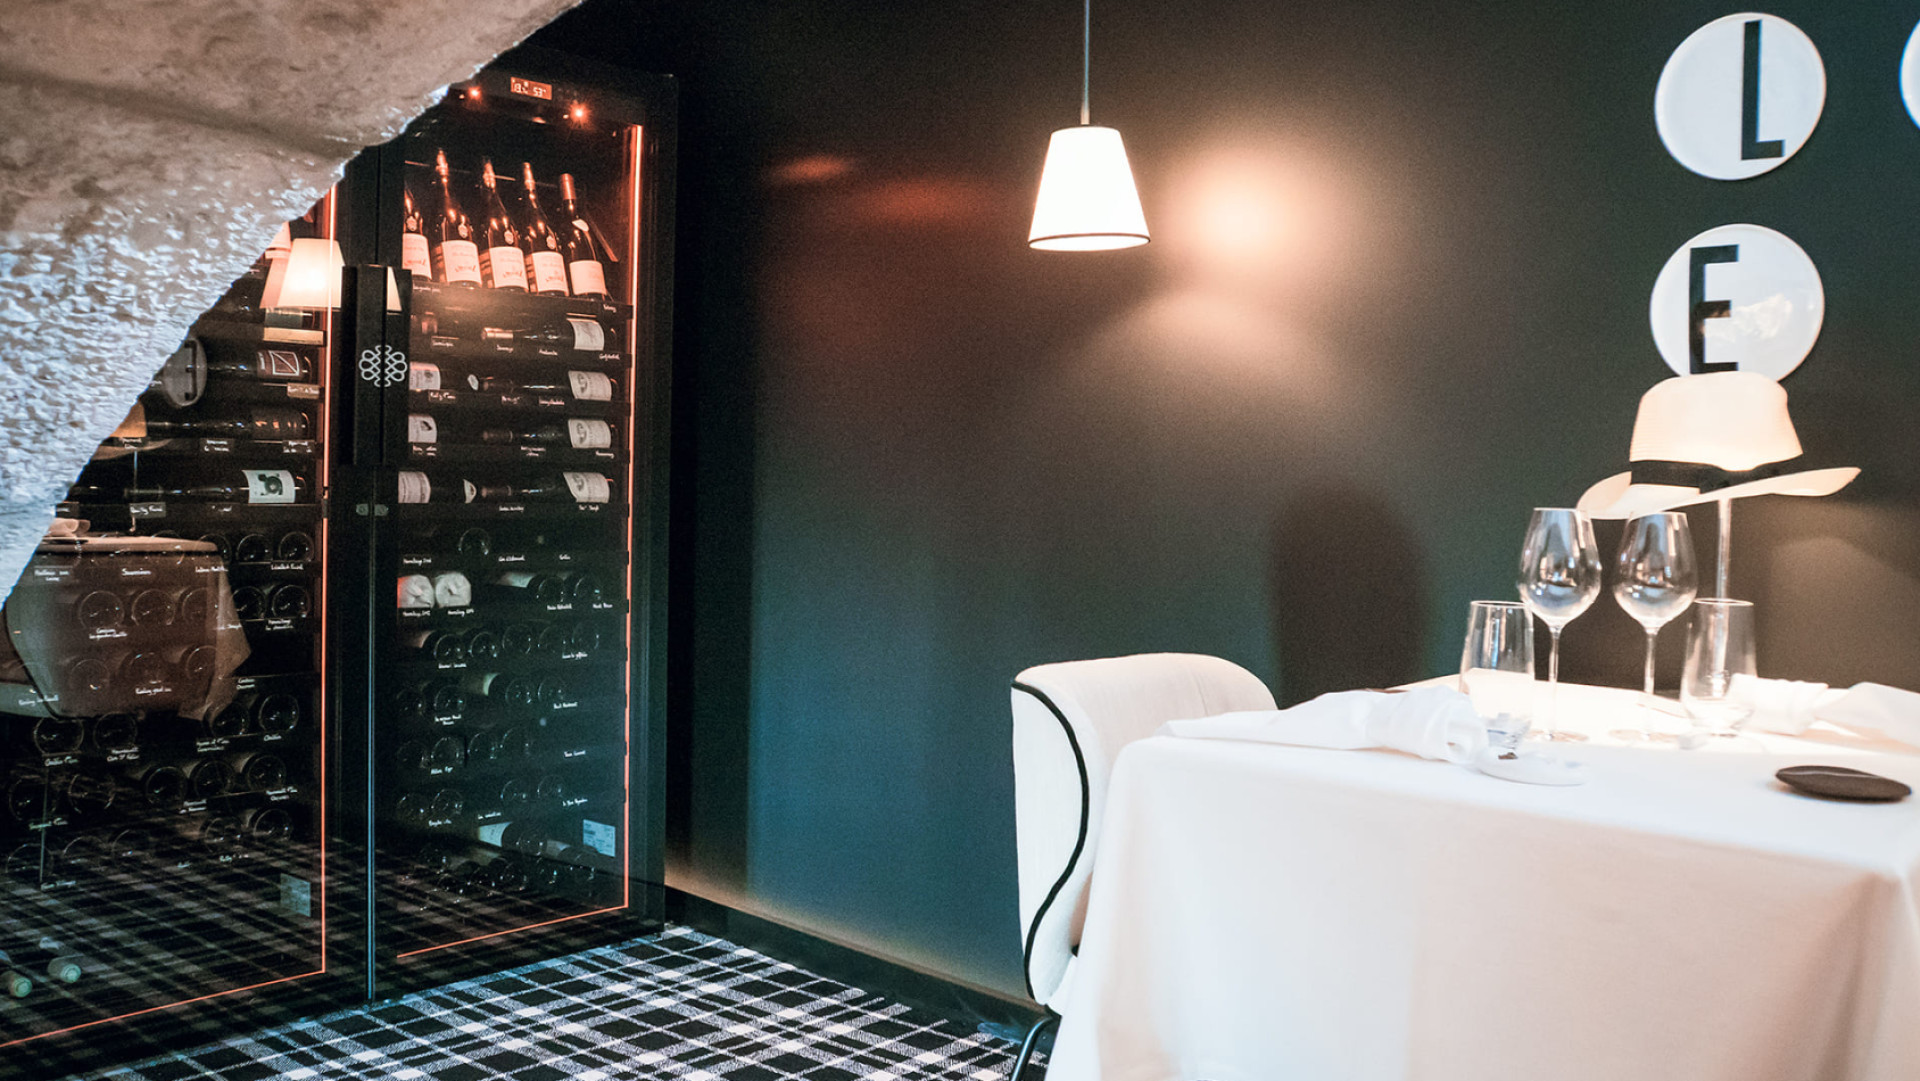 Belle installation de 2 armoires à vin dans une alcôve avec encadrement porte voûtée en pierre. Intégration parfaite dans l'espace repas. EuroCave Revelation